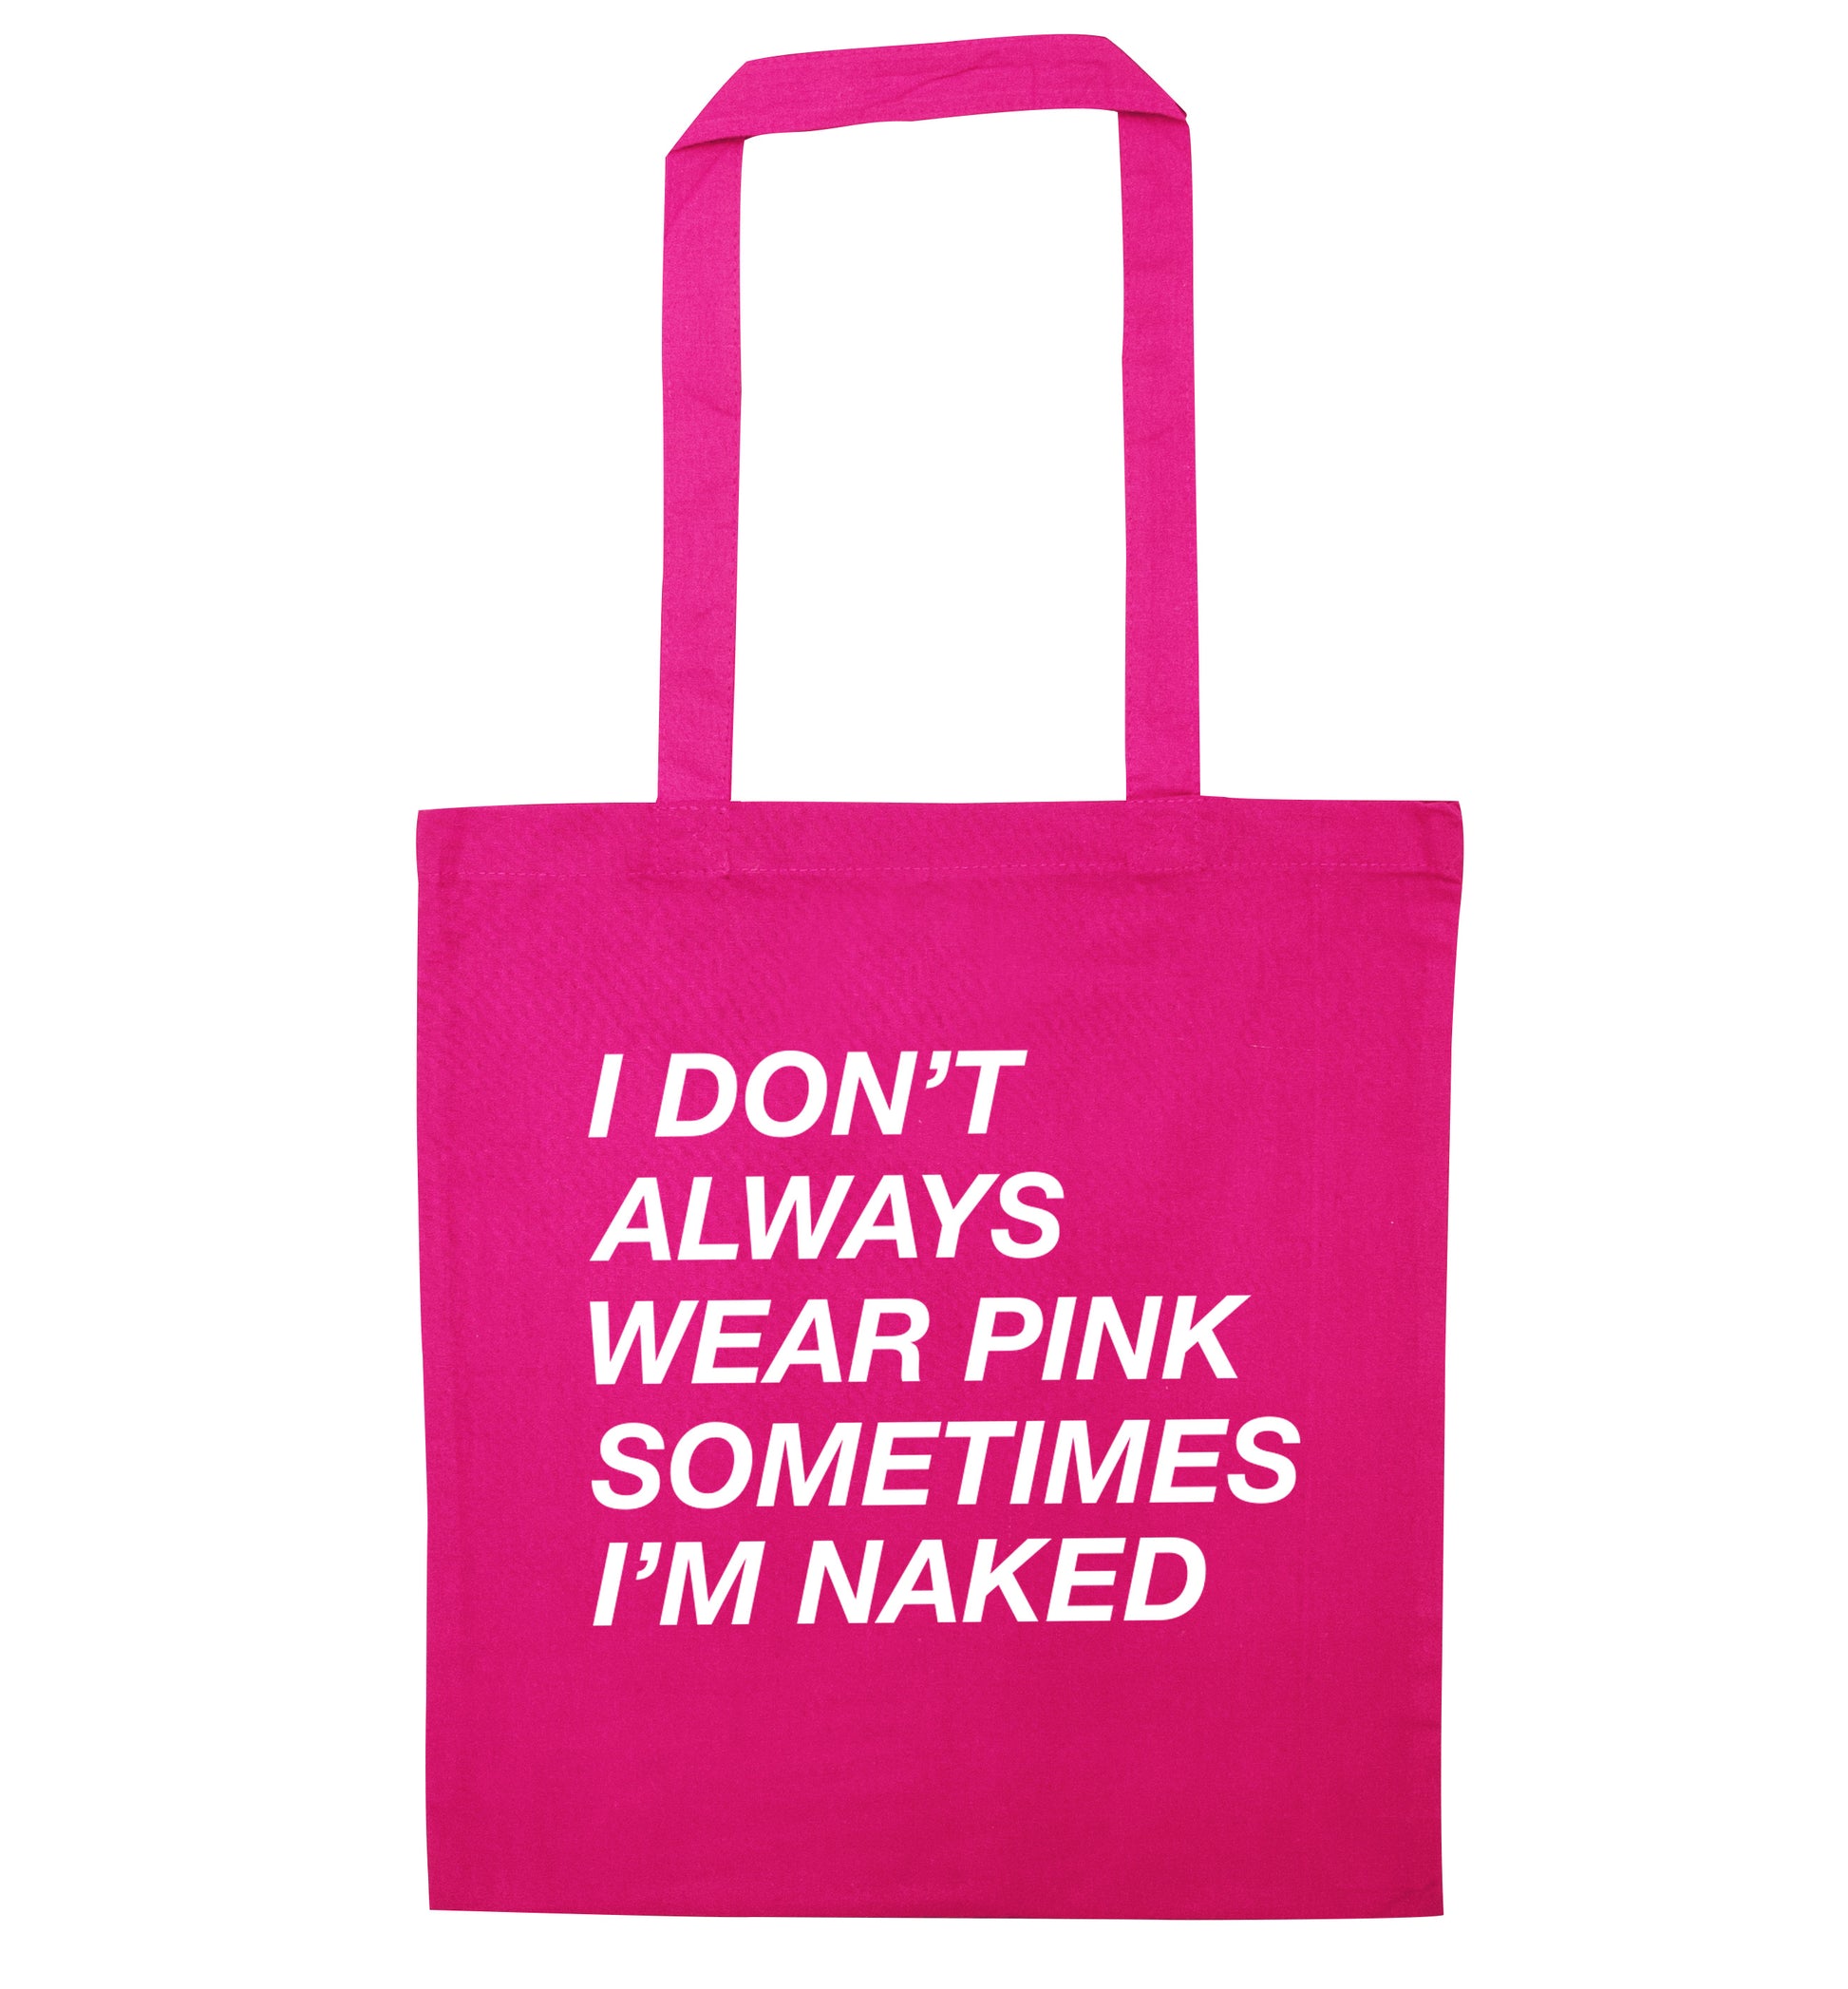 I don't always wear pink sometimes I'm naked pink tote bag